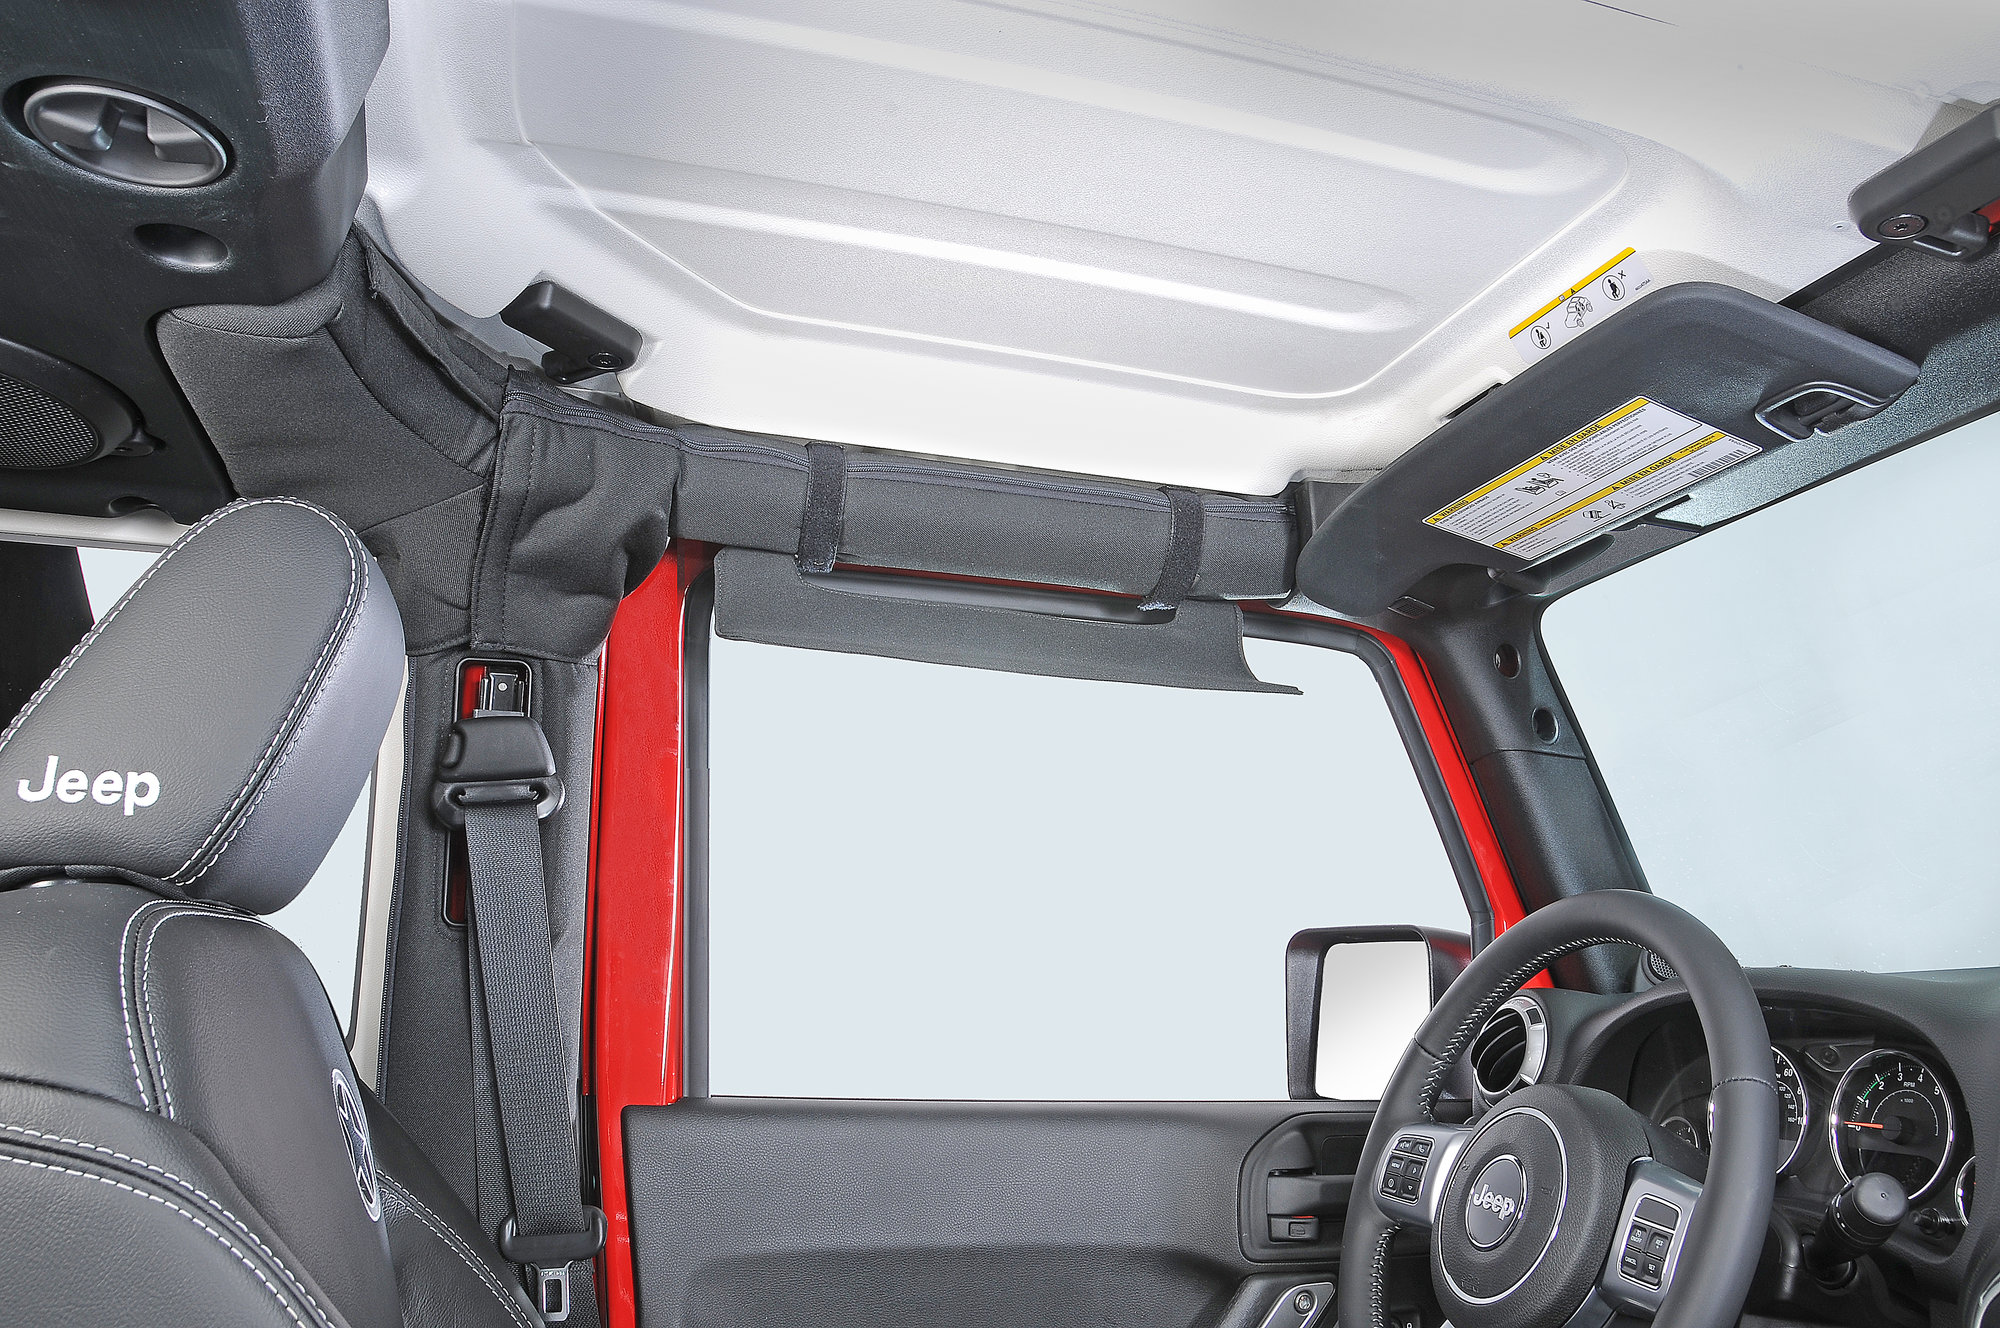 eklips Side Window Sun Visor for 87-18 Jeep Wrangler YJ, TJ, Unlimited,  Wrangler & Wrangler Unlimited JK | Quadratec